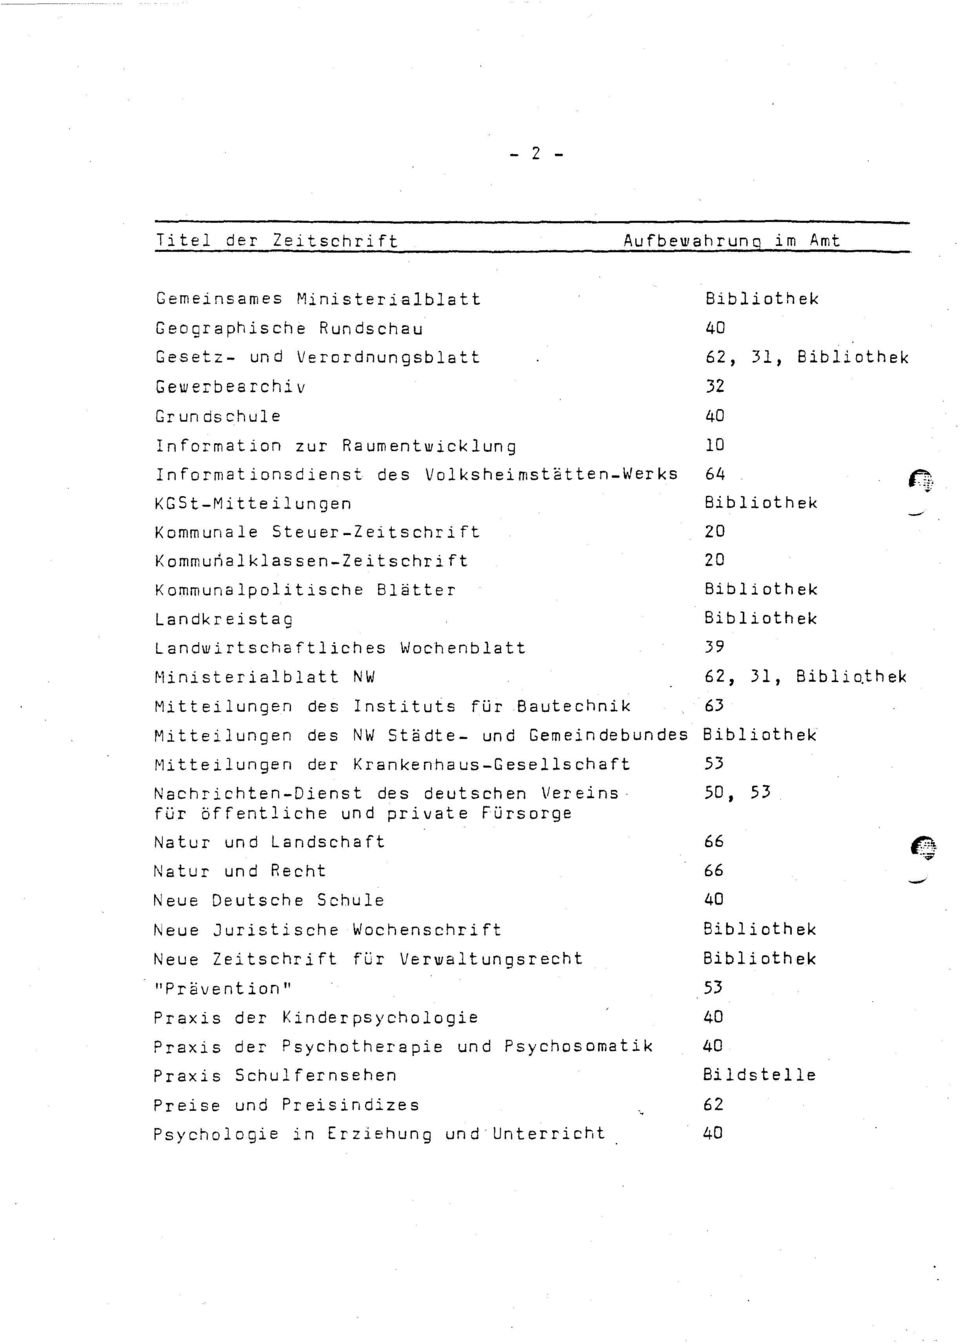 Ministerialblatt NW Mitteilungen des Instituts für Bautechnik Mitteilungen des NW, 31, 20 20, 31, Biblio.